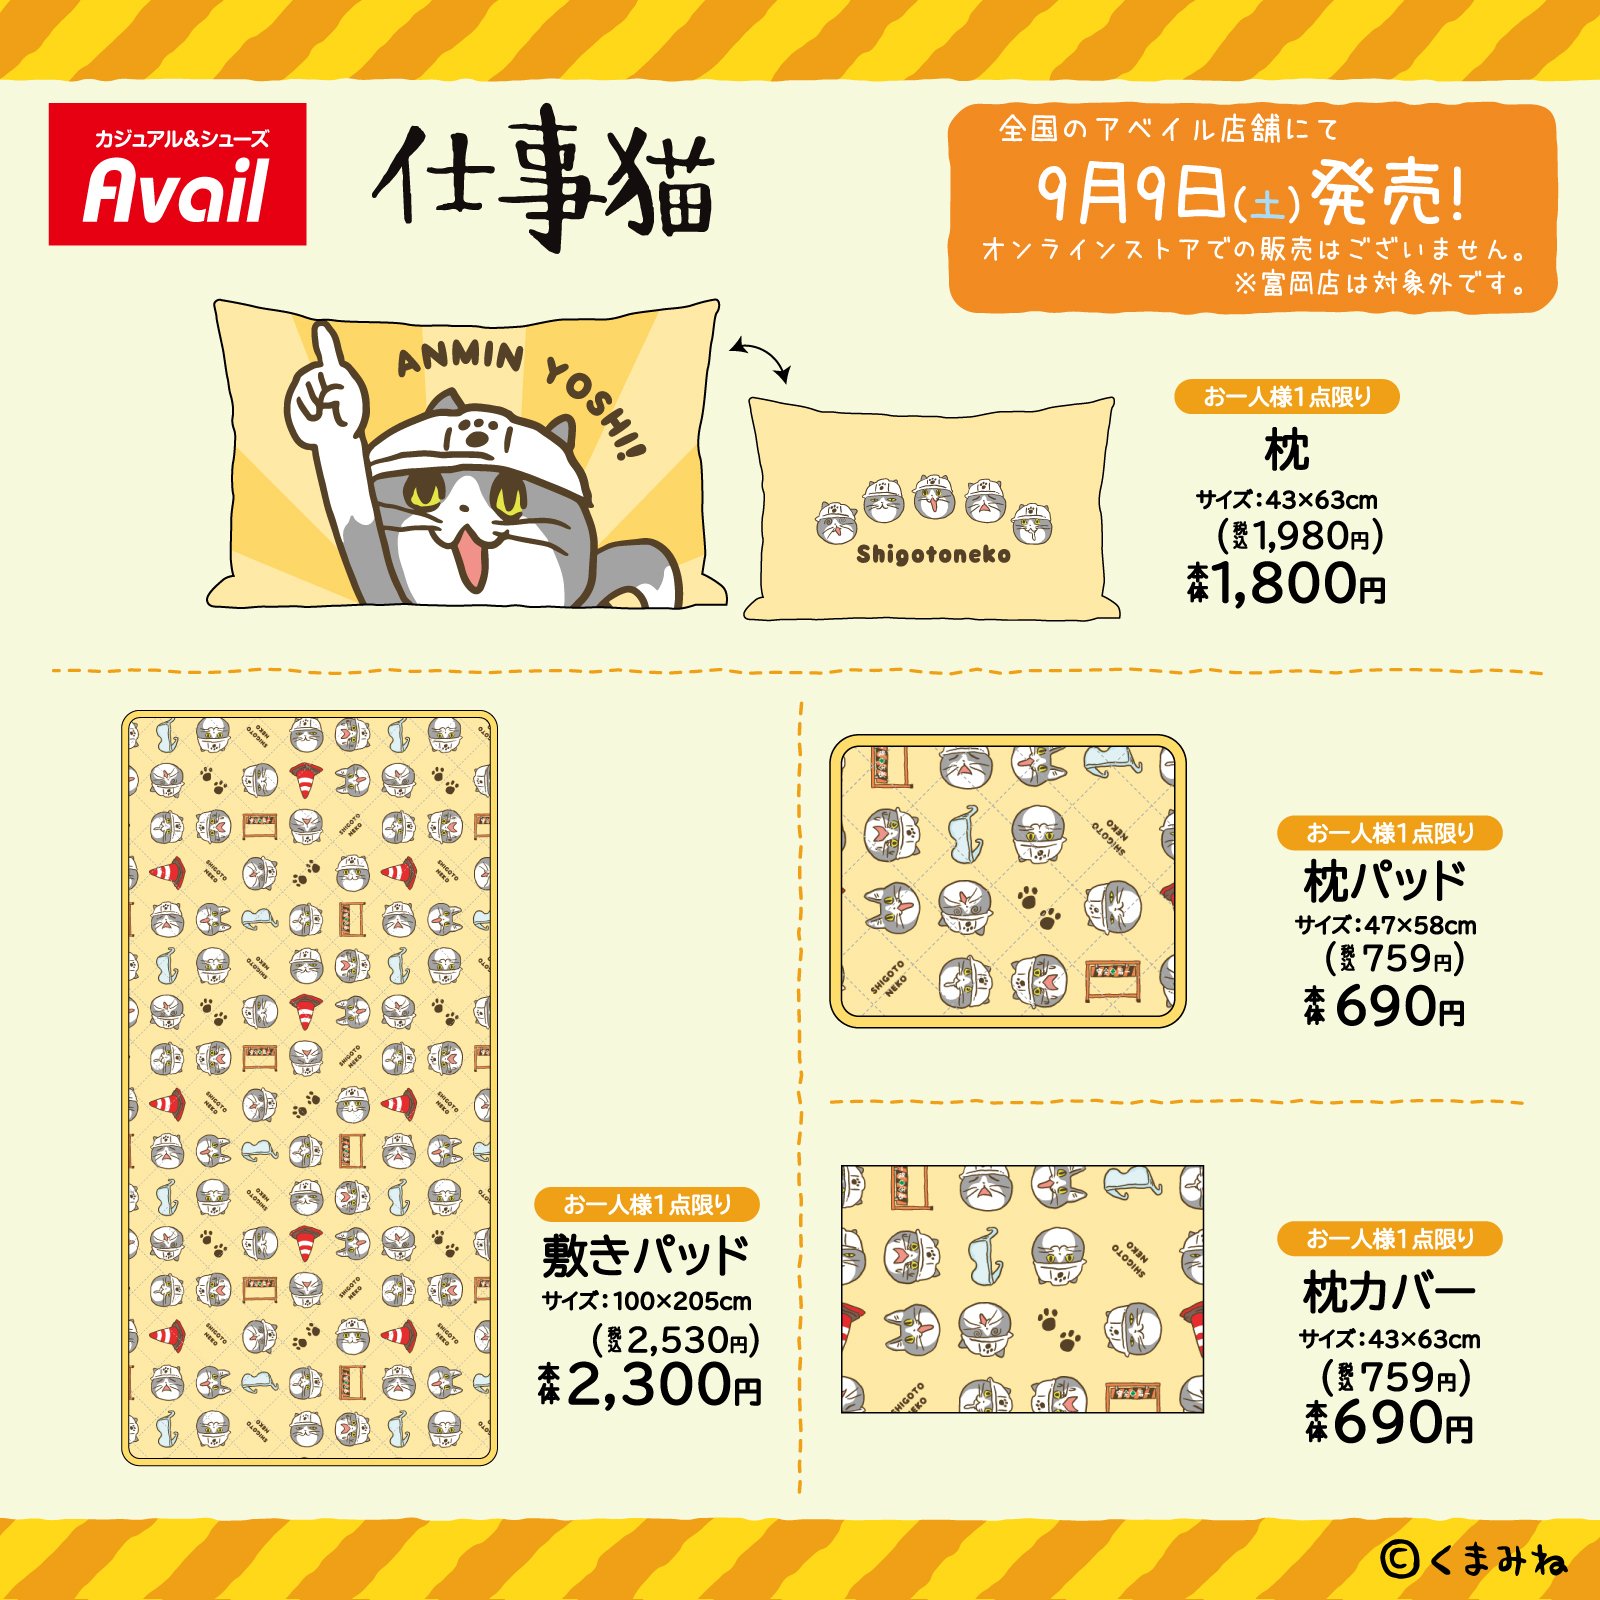 仕事猫 × Avail (アベイル) 全国 9月9日よりコラボデザイン寝具が発売!